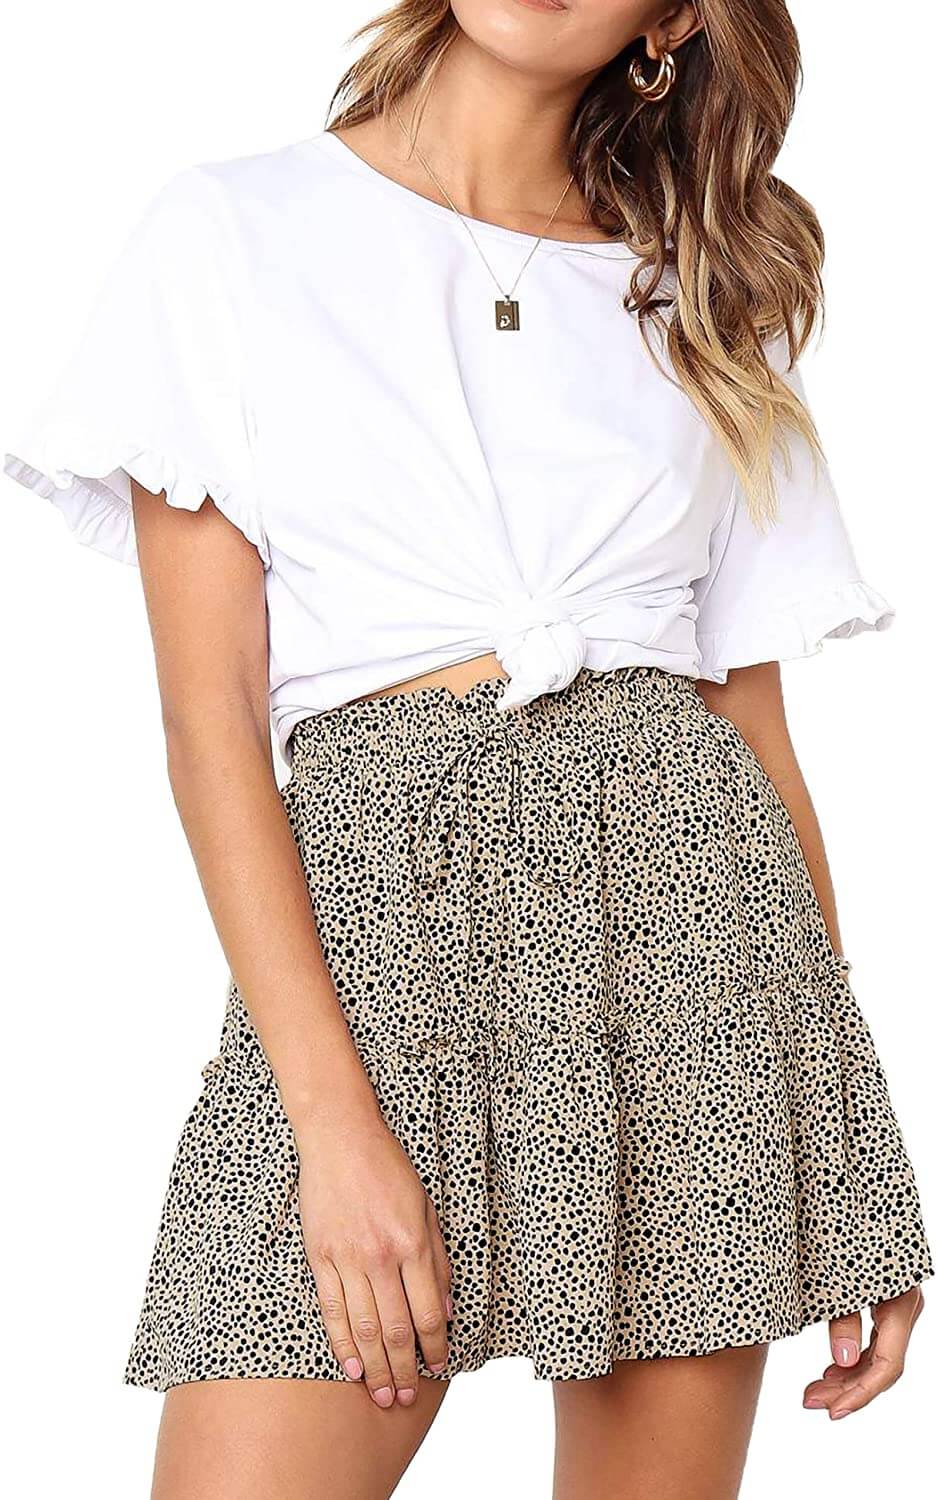 Relipop Women's Floral Flared Short Skirt Polka Dot Pleated Mini Skater Skirt with Drawstring - beandbuy